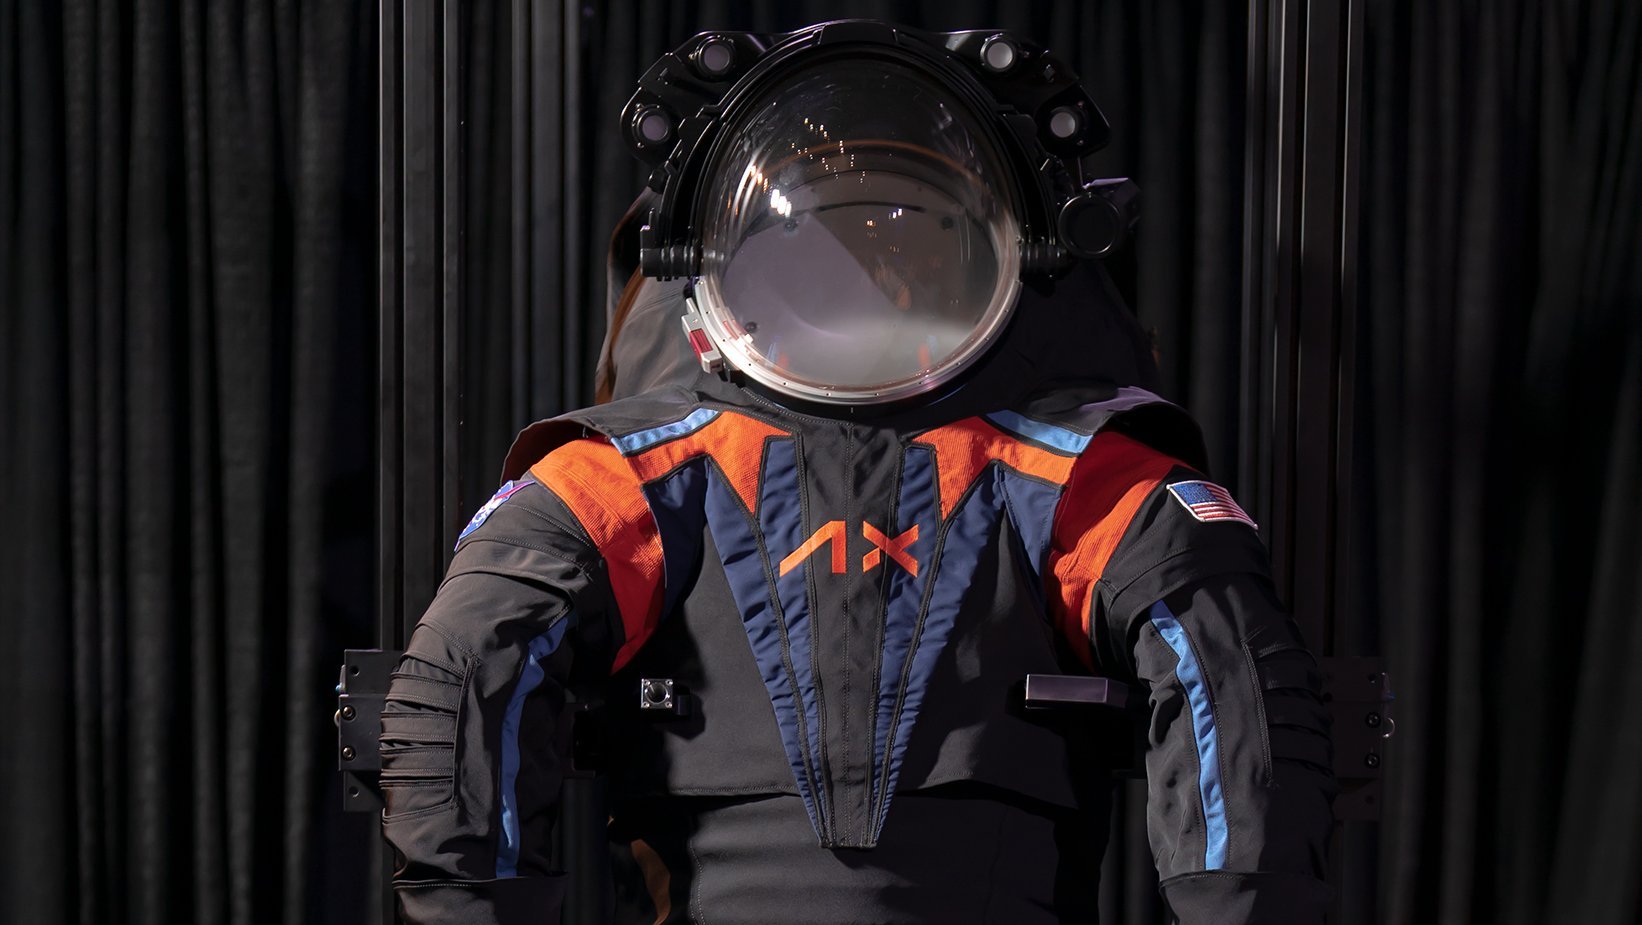 Ein schwarzer Raumanzug mit orangen und blauen Details einschließlich Helm